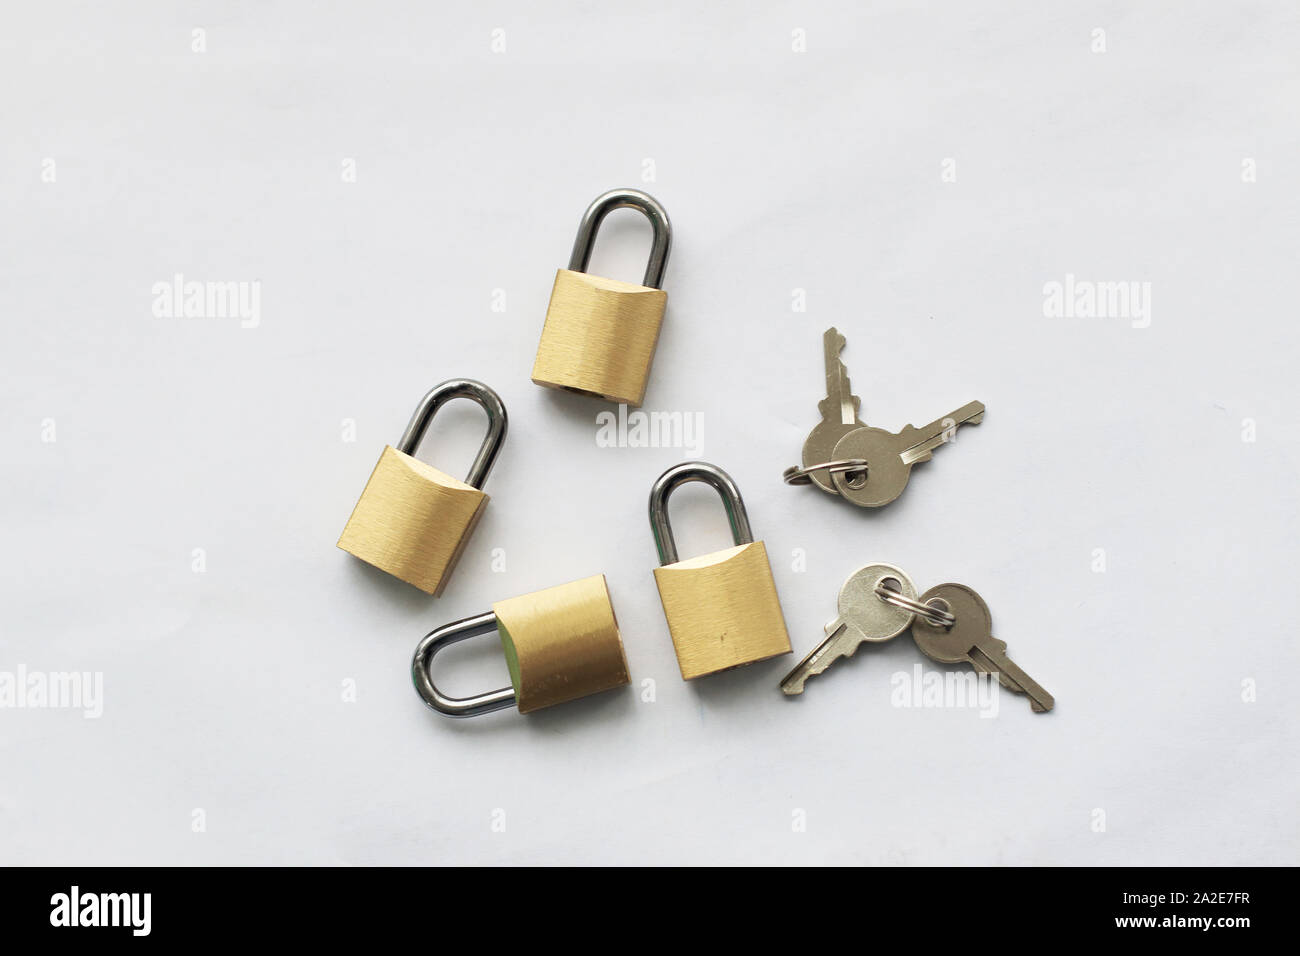 Keys and padlocks isolated against white background Stock Photo